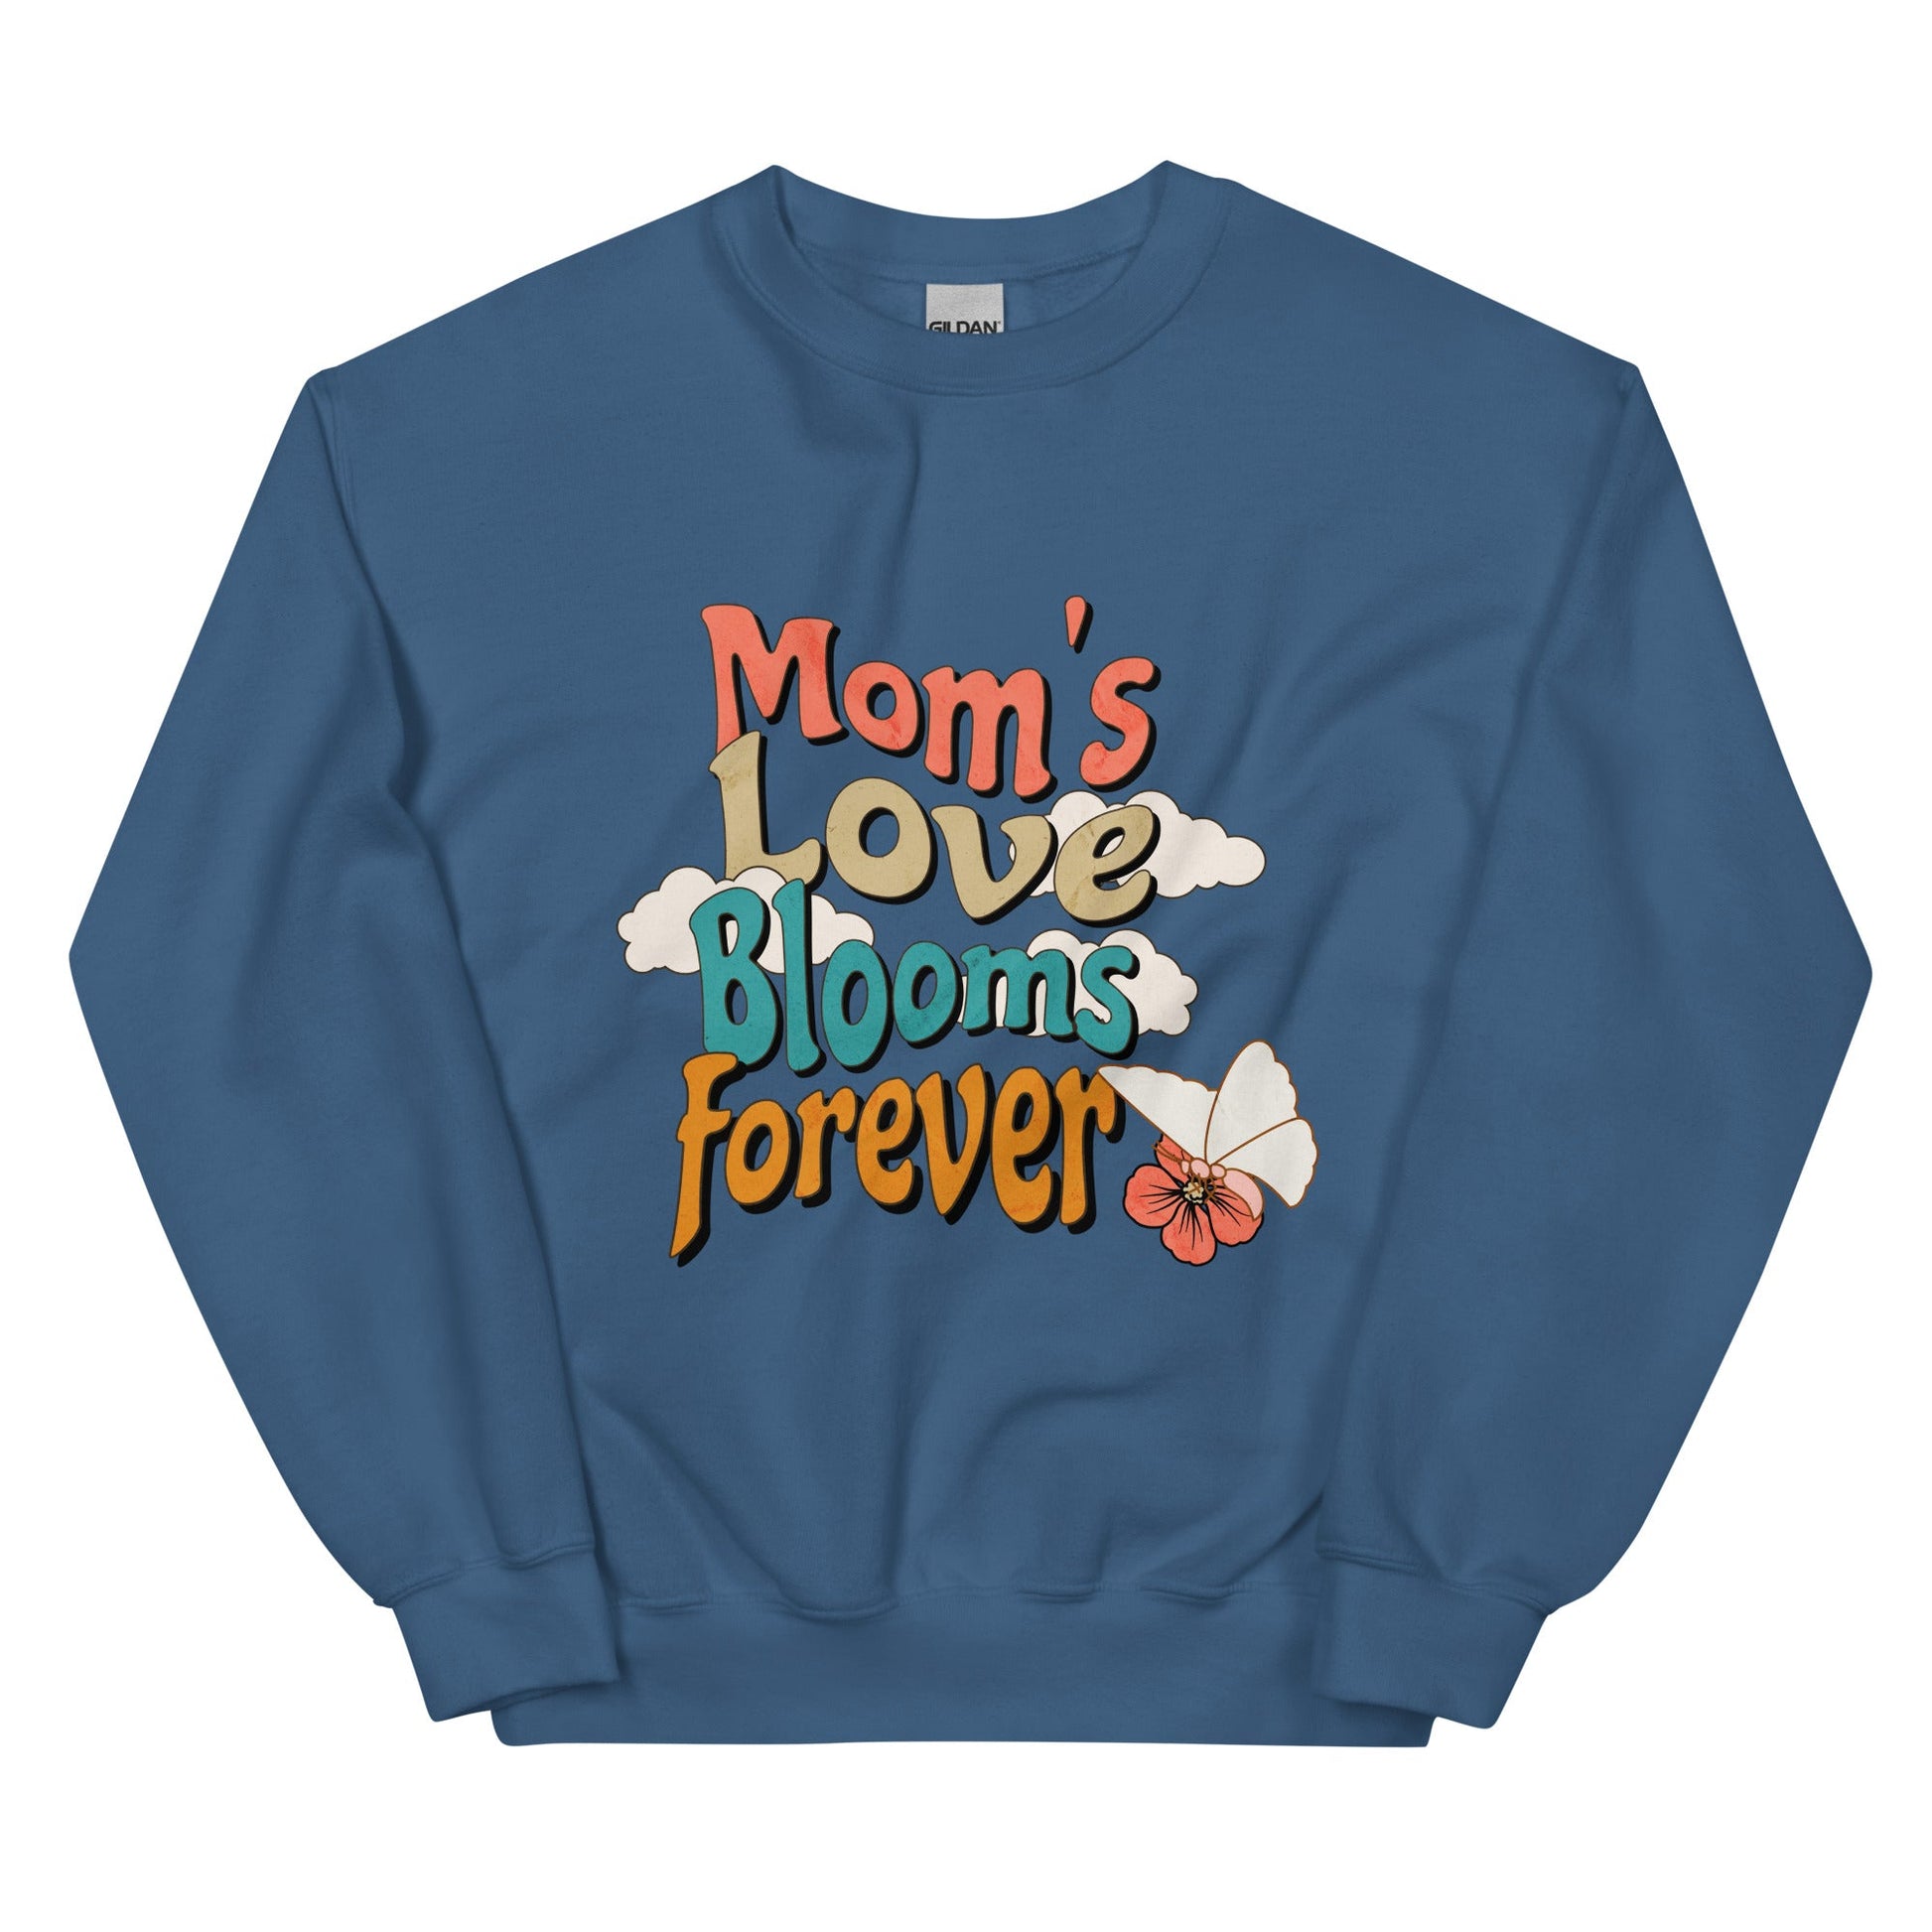 Mom's Love Blooms Forever Sweatshirt-Indigo Blue-S-mysticalcherry